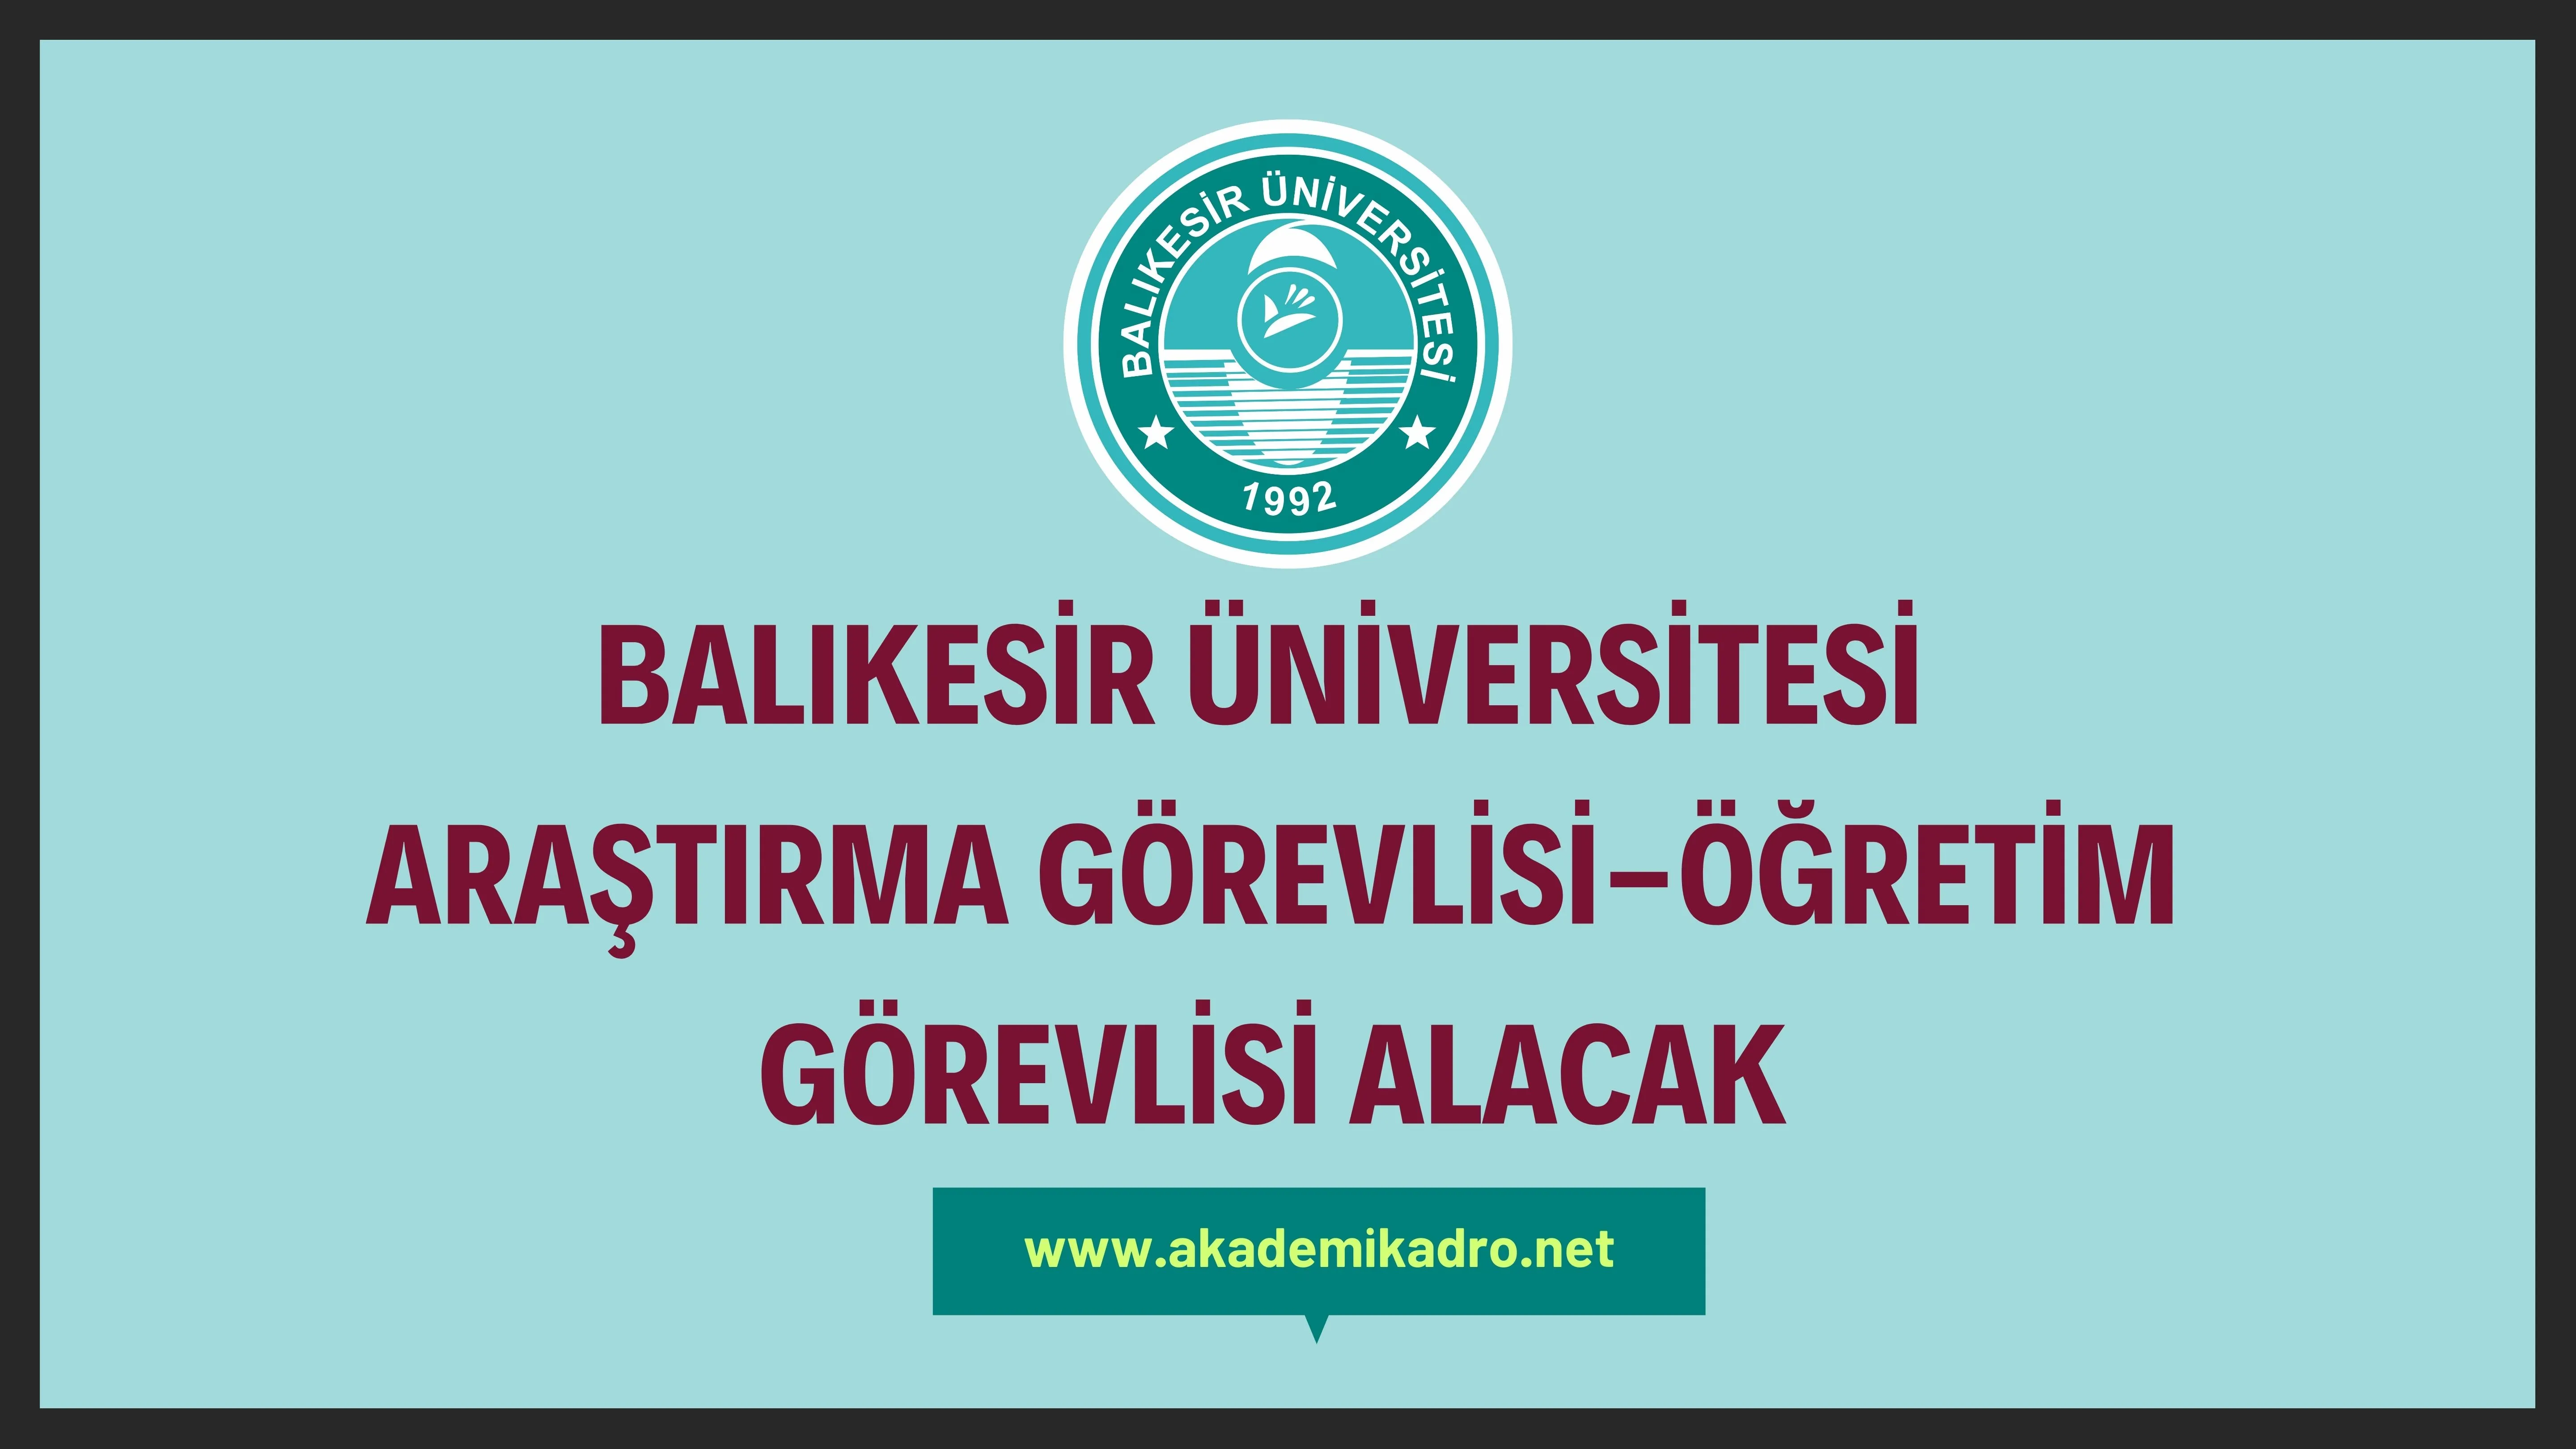 Balıkesir Üniversitesi 6 Araştırma görevlisi ve 5 öğretim görevlisi alacaktır. Son başvuru tarihi 05 Aralık 2023